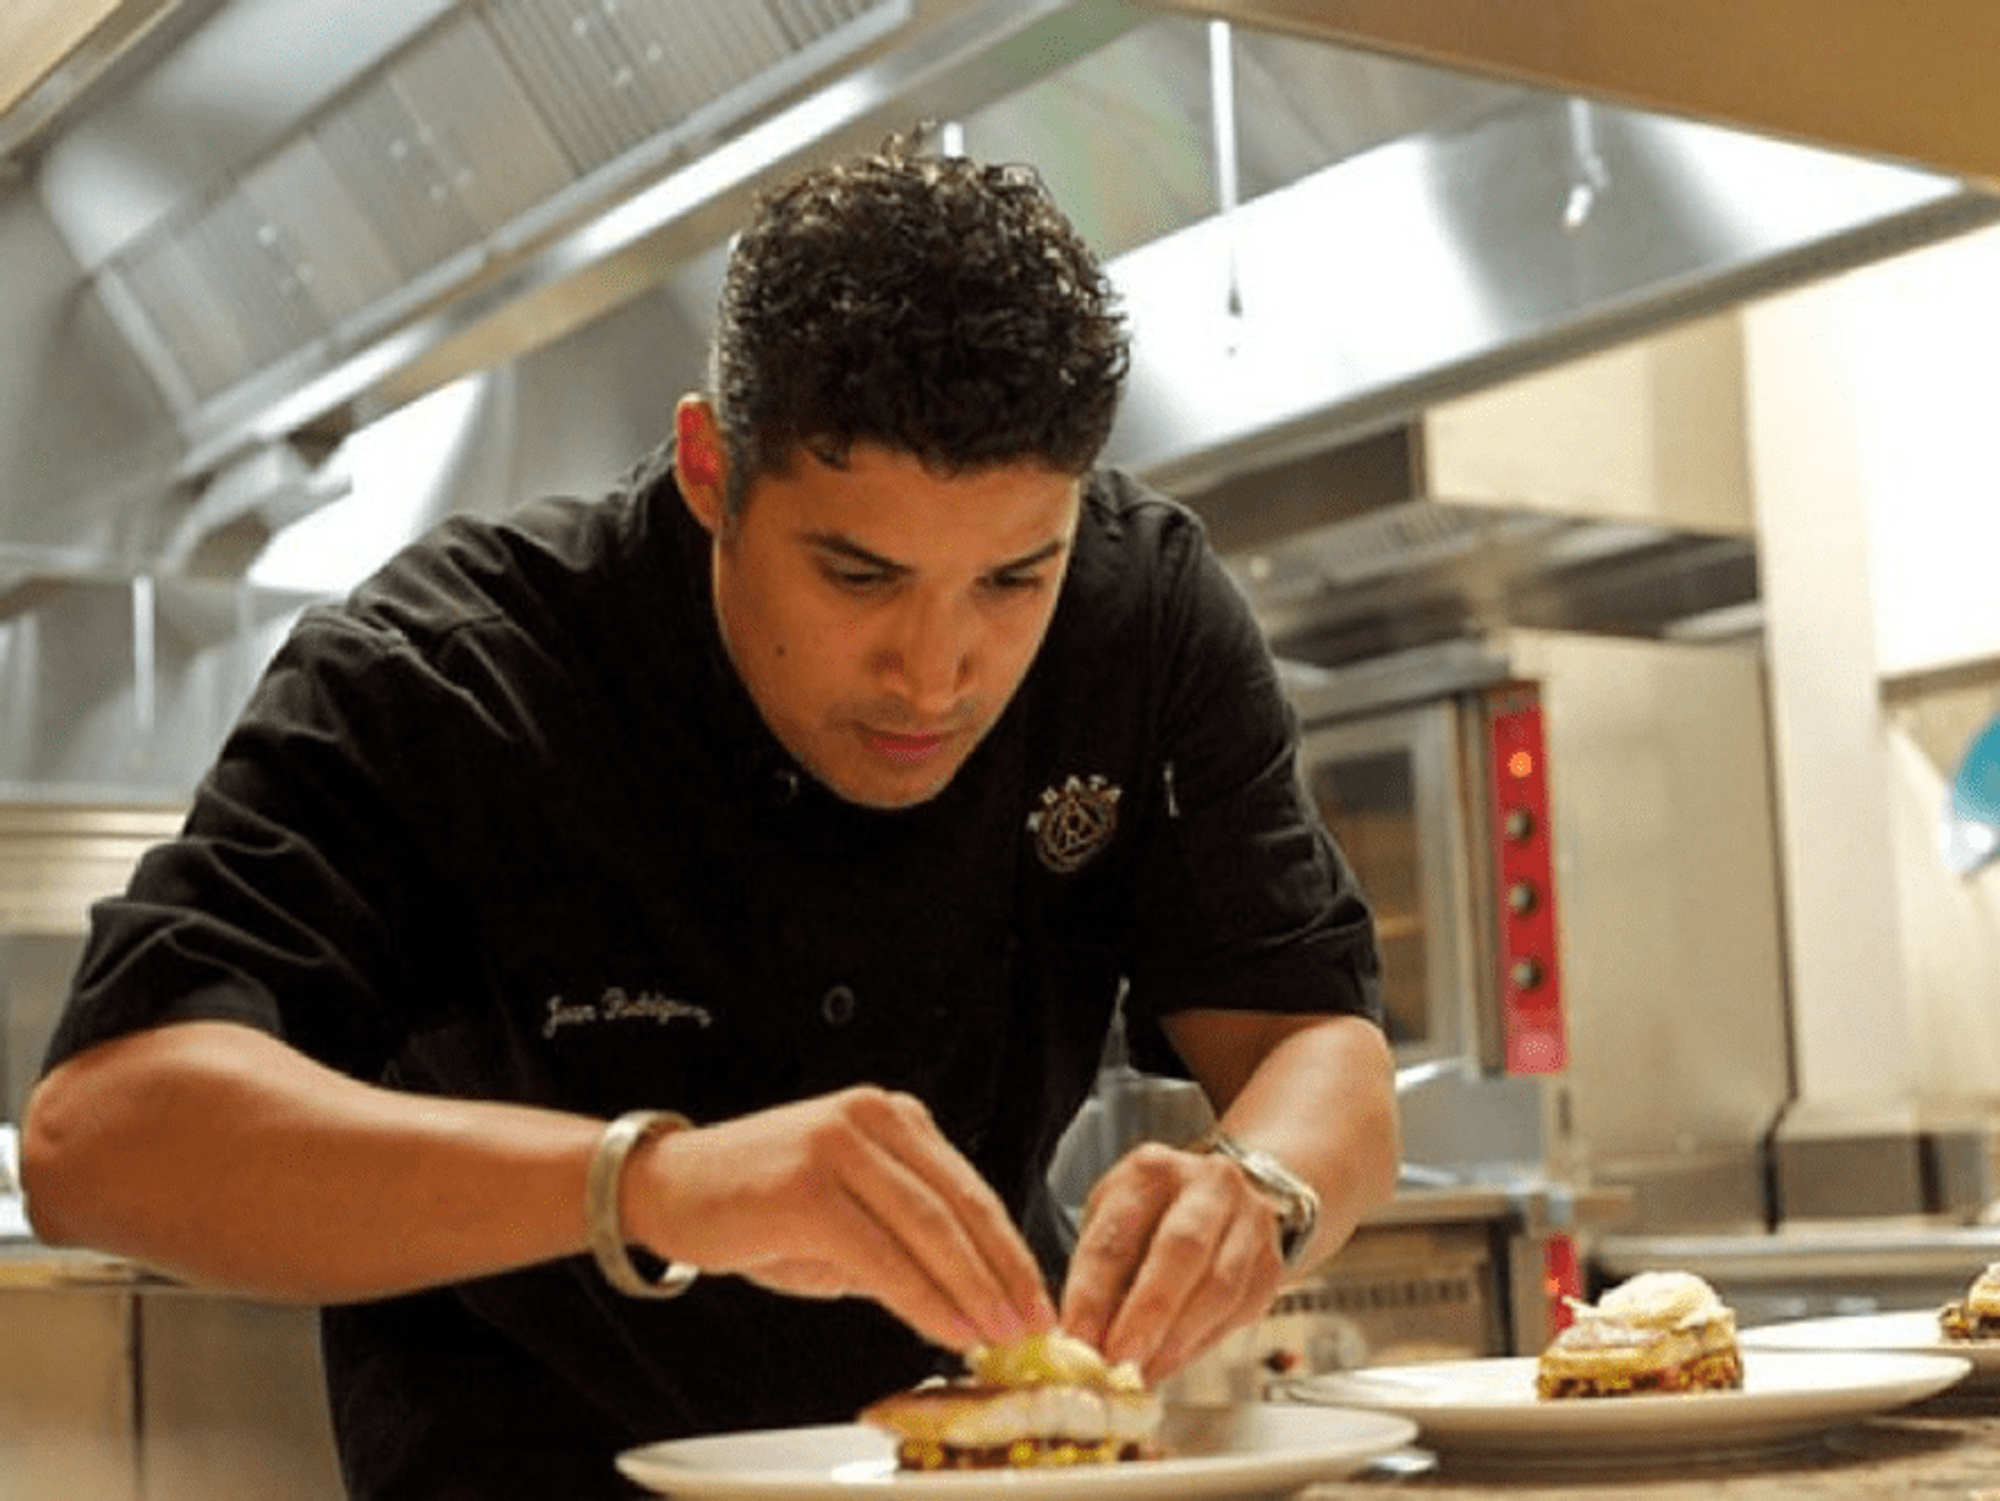 Chef Juan Rodriguez at work